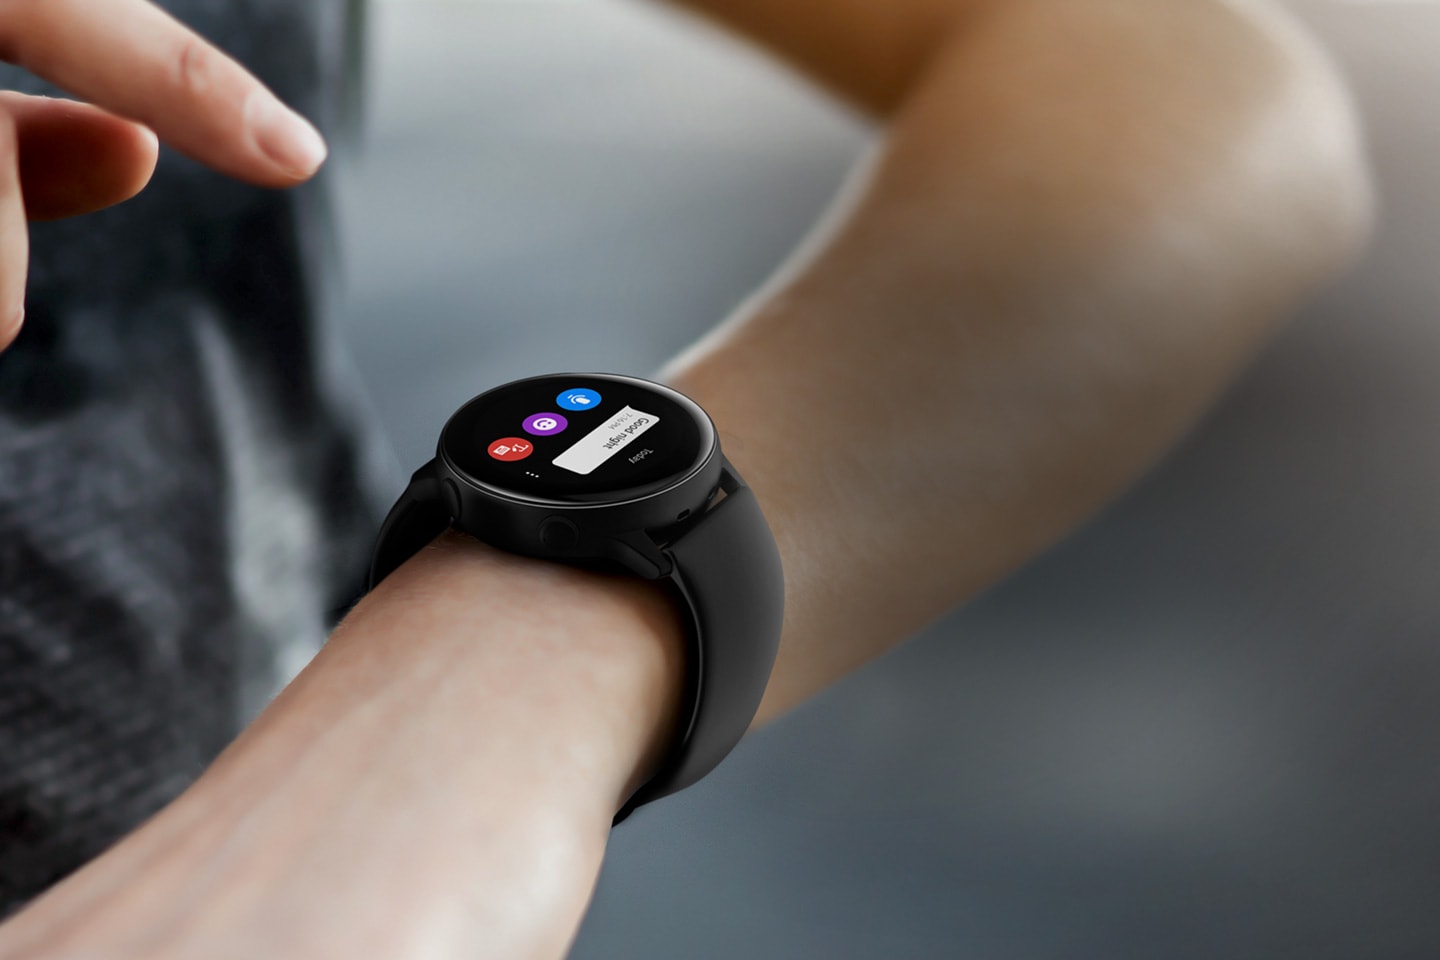 Zegarek Galaxy Watch Active możesz sparować ze smartfonem i innymi urządzeniami, dzięki czemu otrzymasz wiadomości, a także będziesz mógł sterować podłączonymi sprzętami